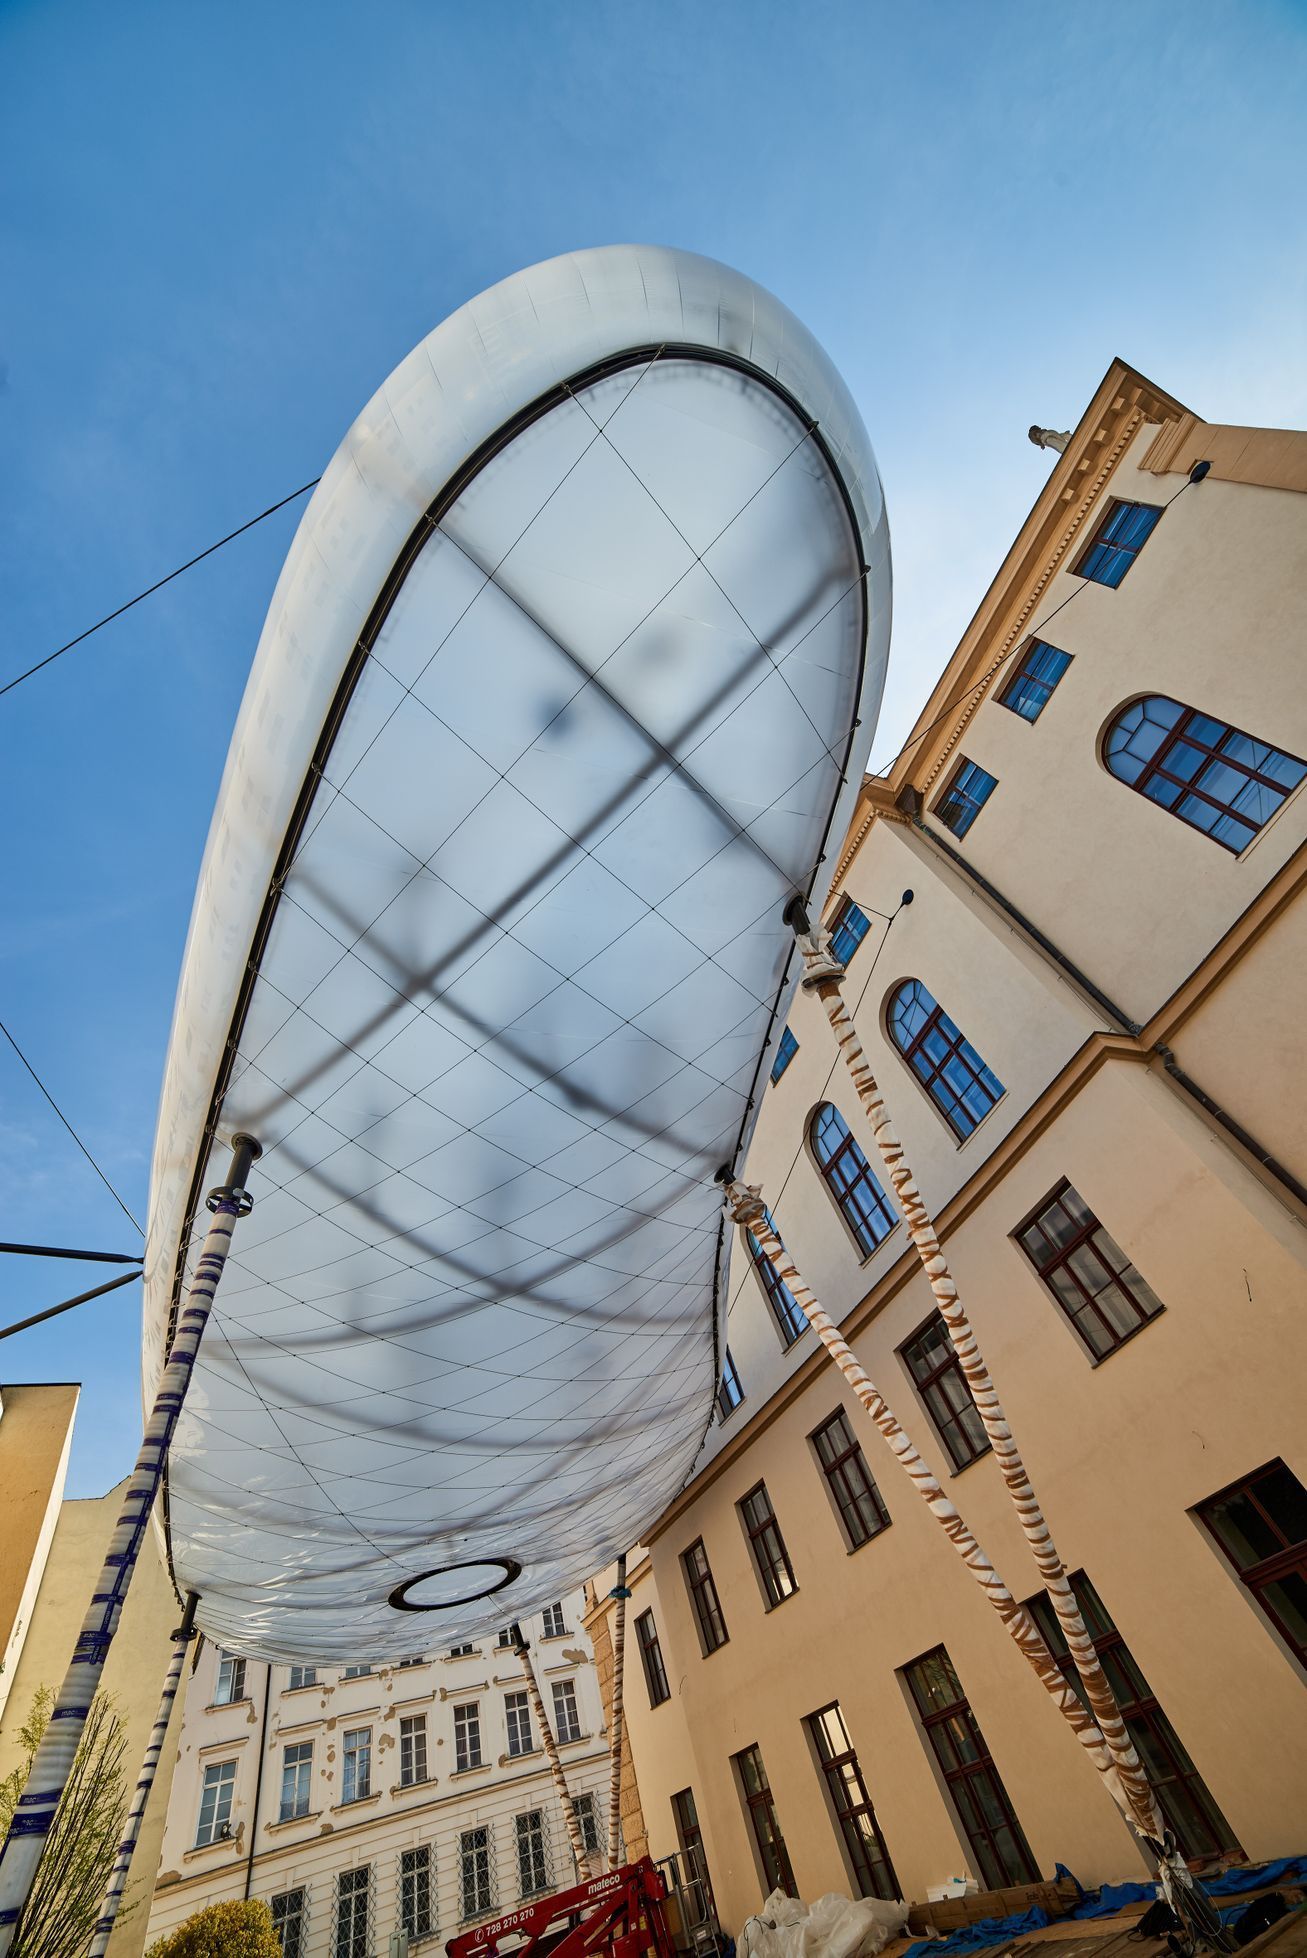 Mrak, Uměleckoprůmyslové muzeum, Brno